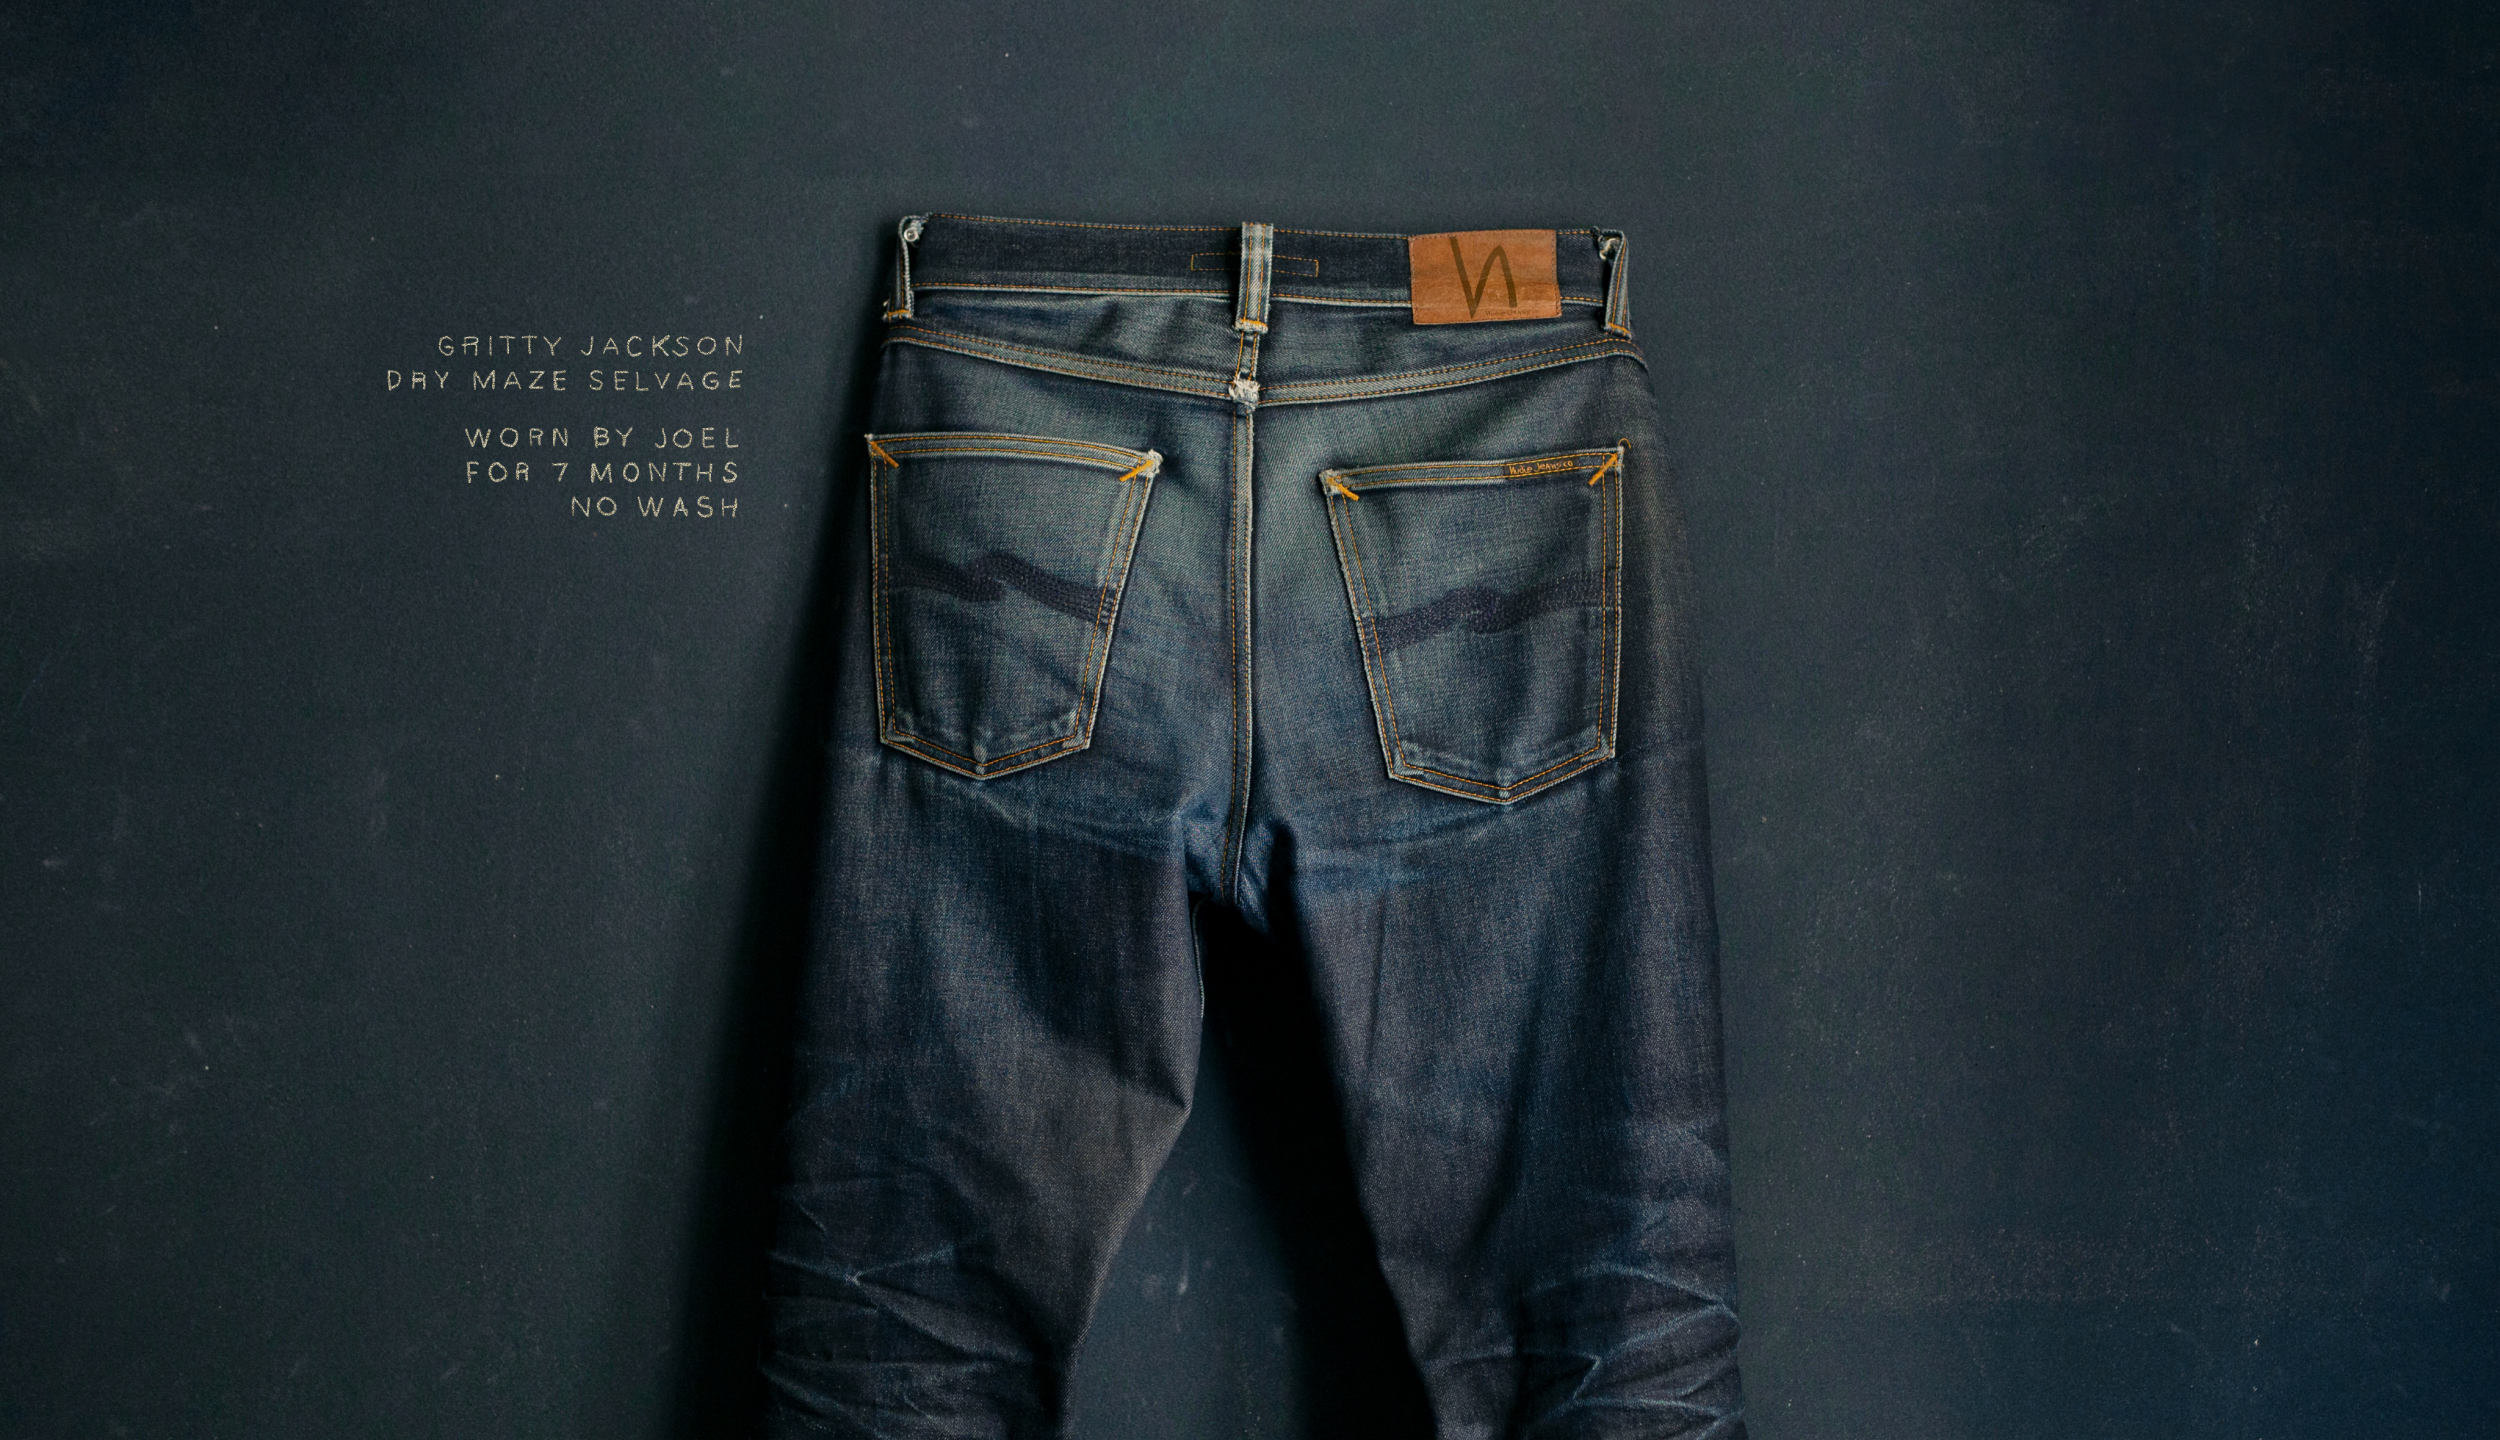 raw x jeans website